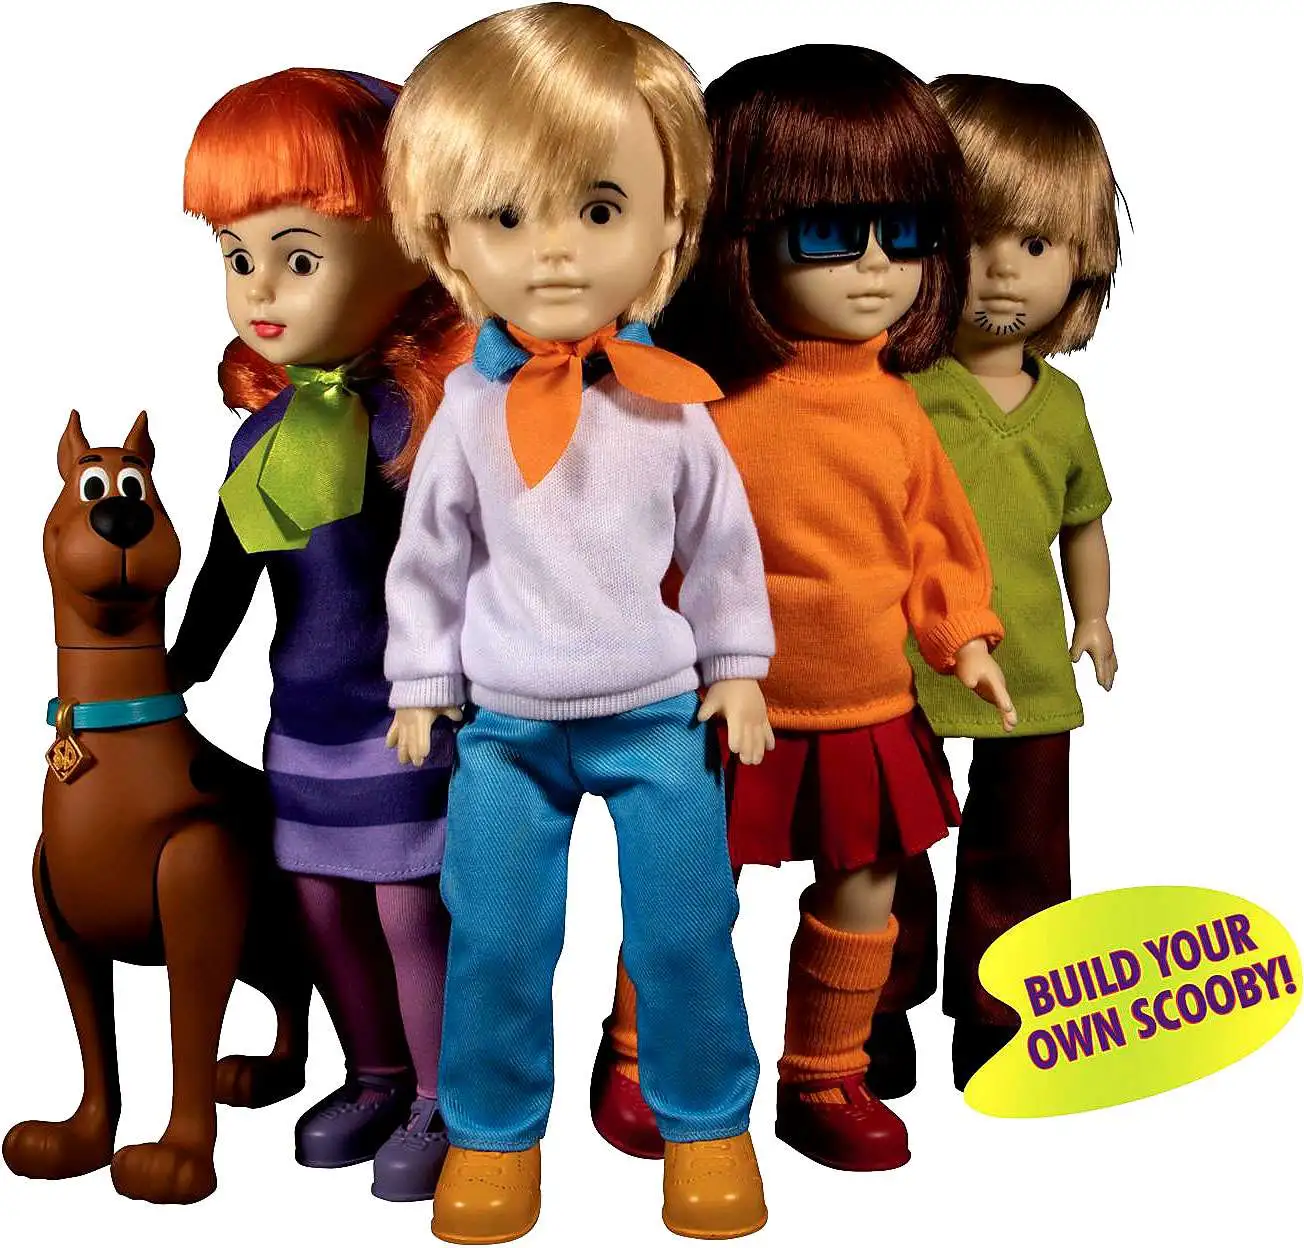 Mezco Fred & Scooby-Doo Build A Figure Living Dead Dolls Presents LDD 